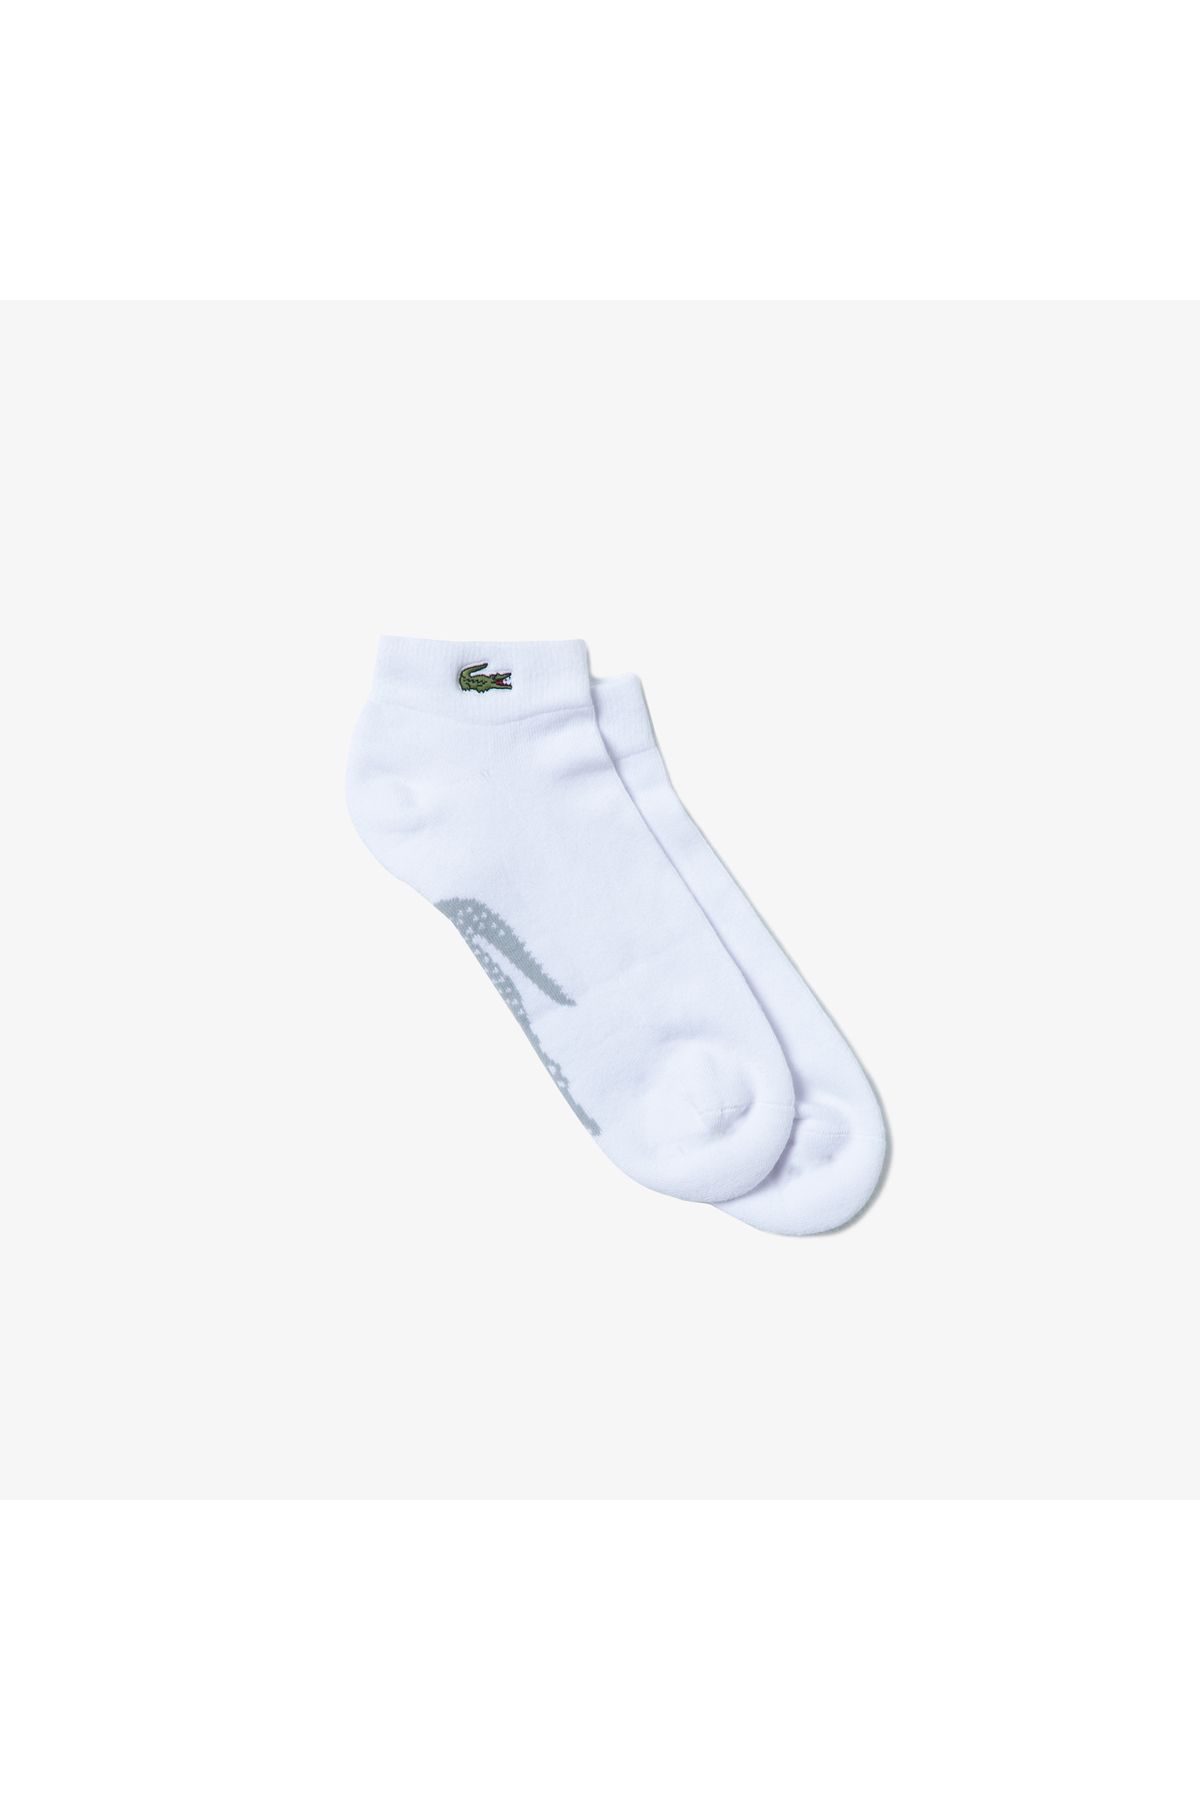 Lacoste Erkek Baskılı Beyaz Çorap